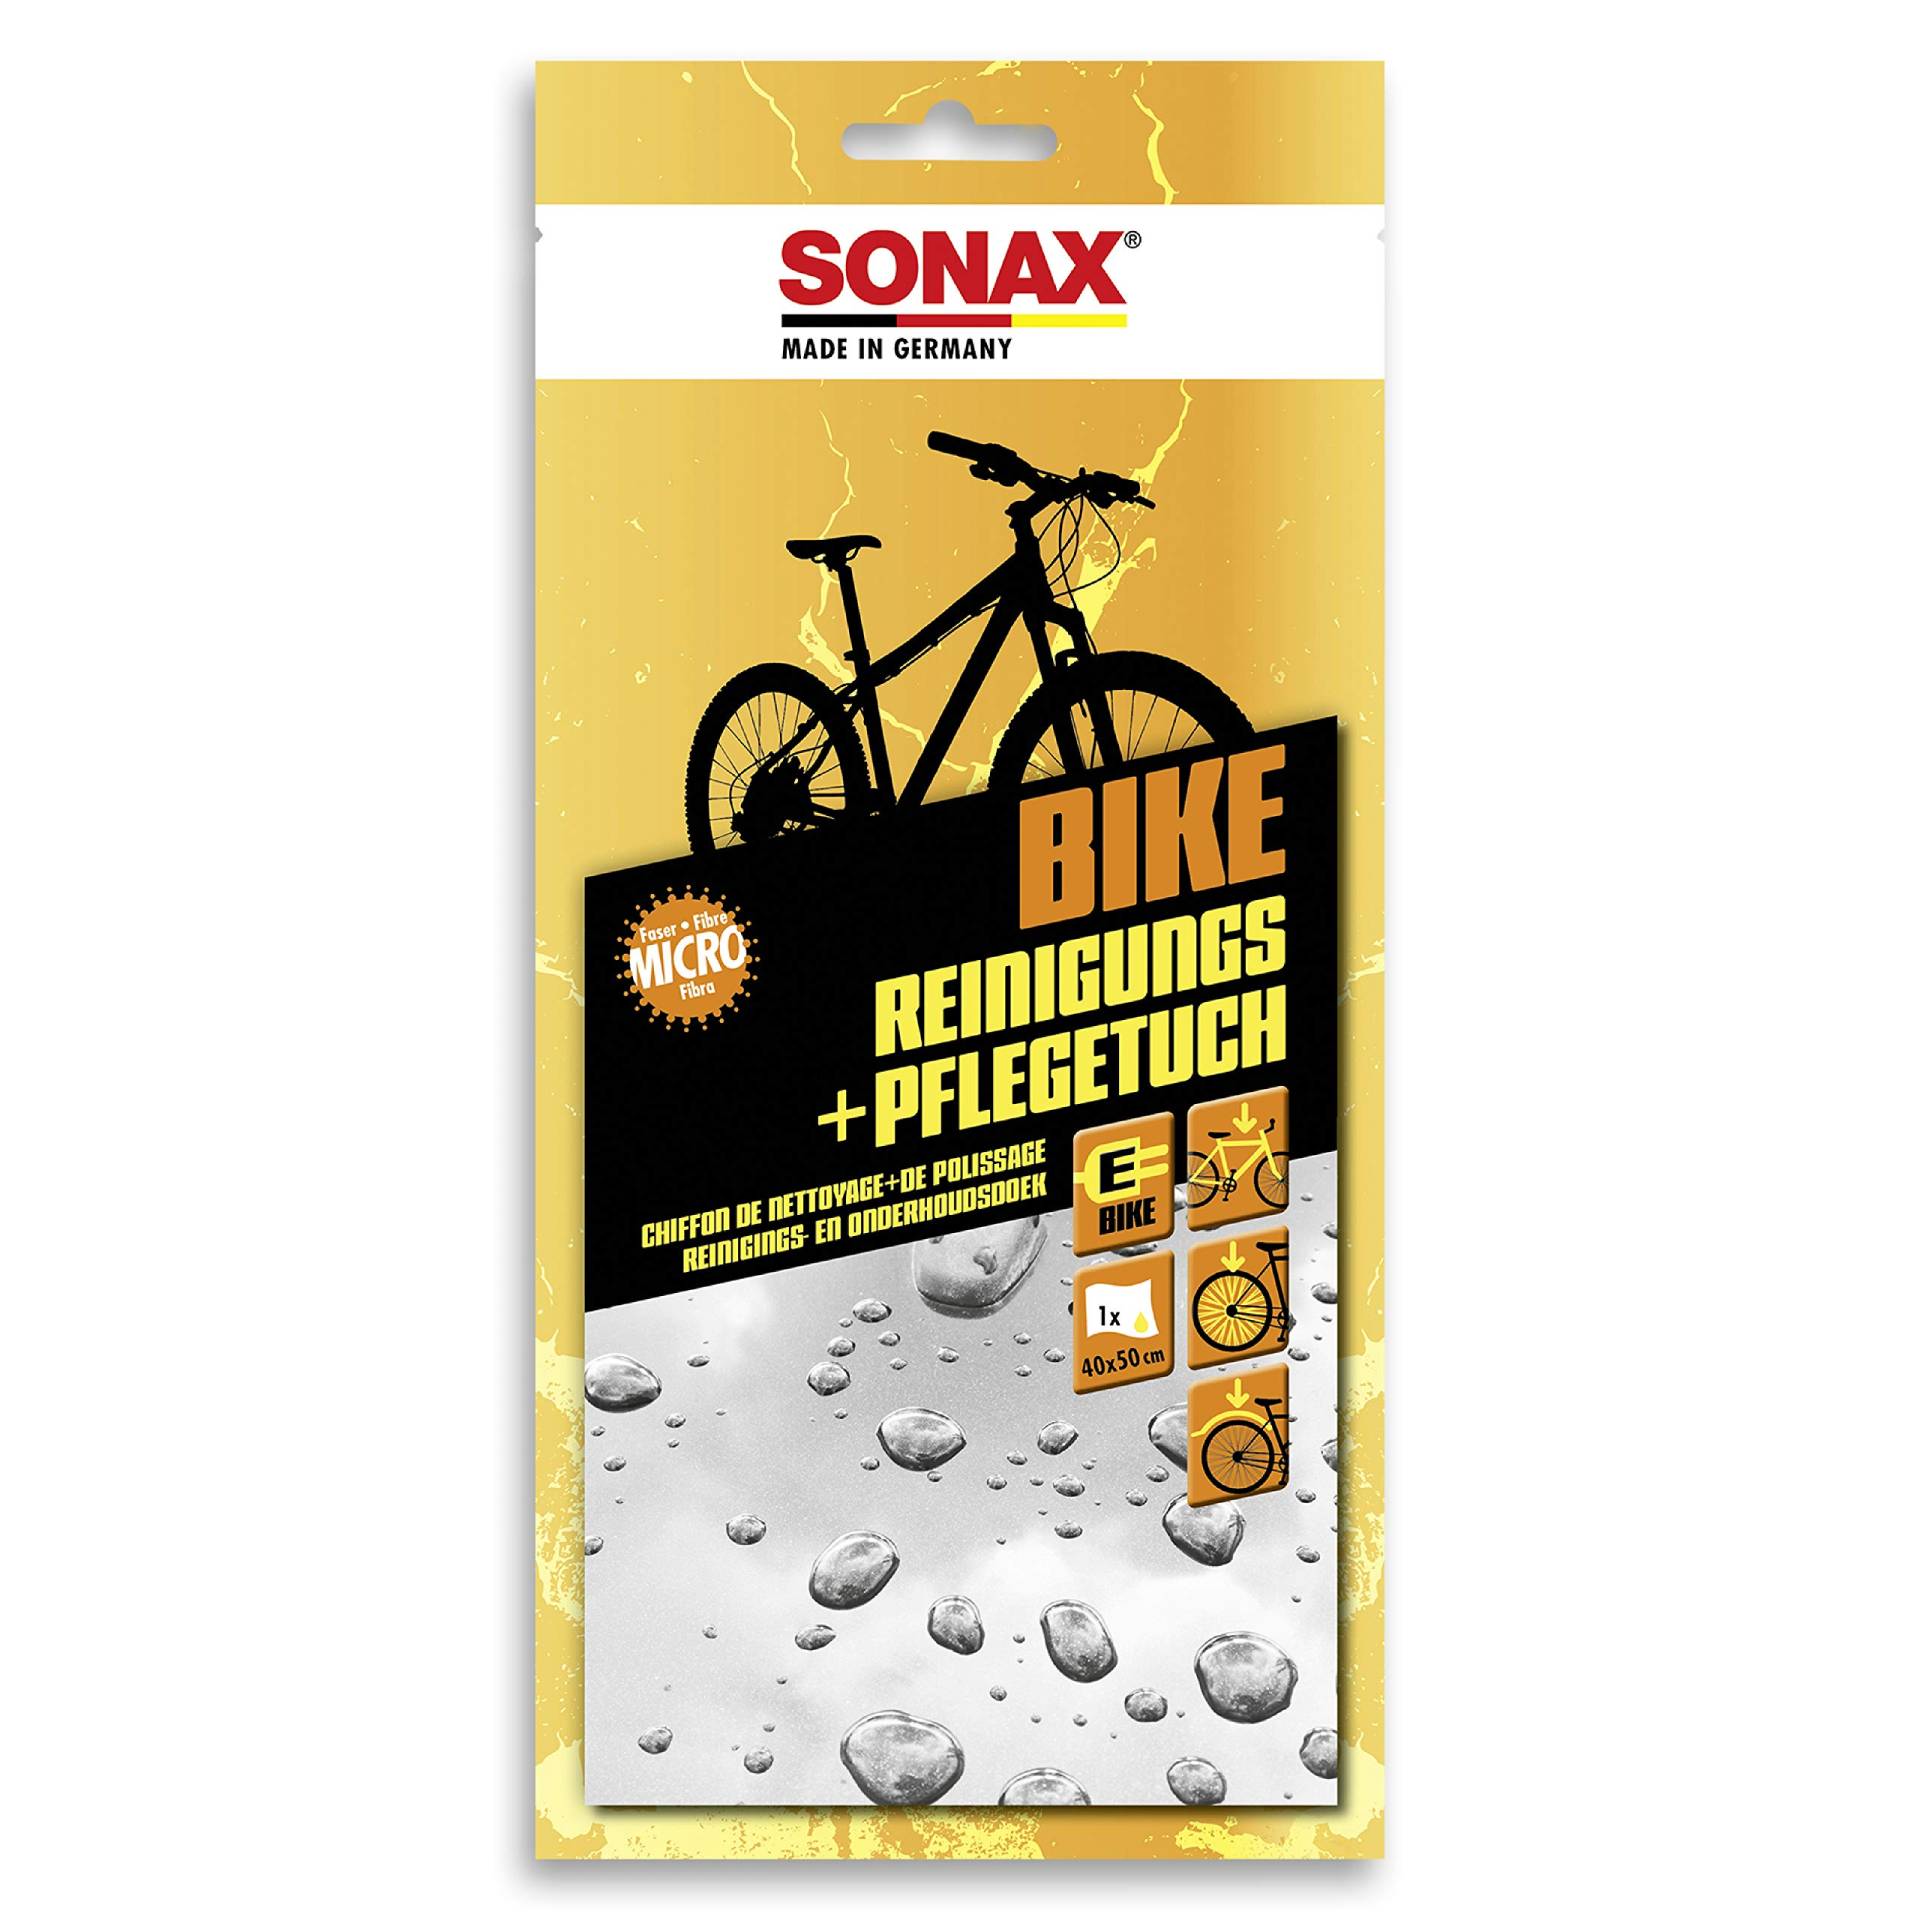 SONAX BIKE Reinigungs+PflegeTuch (40x50 cm) Microfasertuch für die schnelle Reinigung & Pflege von Fahrrädern & E-Bikes, reicht für 1 komplette Anwendung | Art-Nr. 08520000 von SONAX